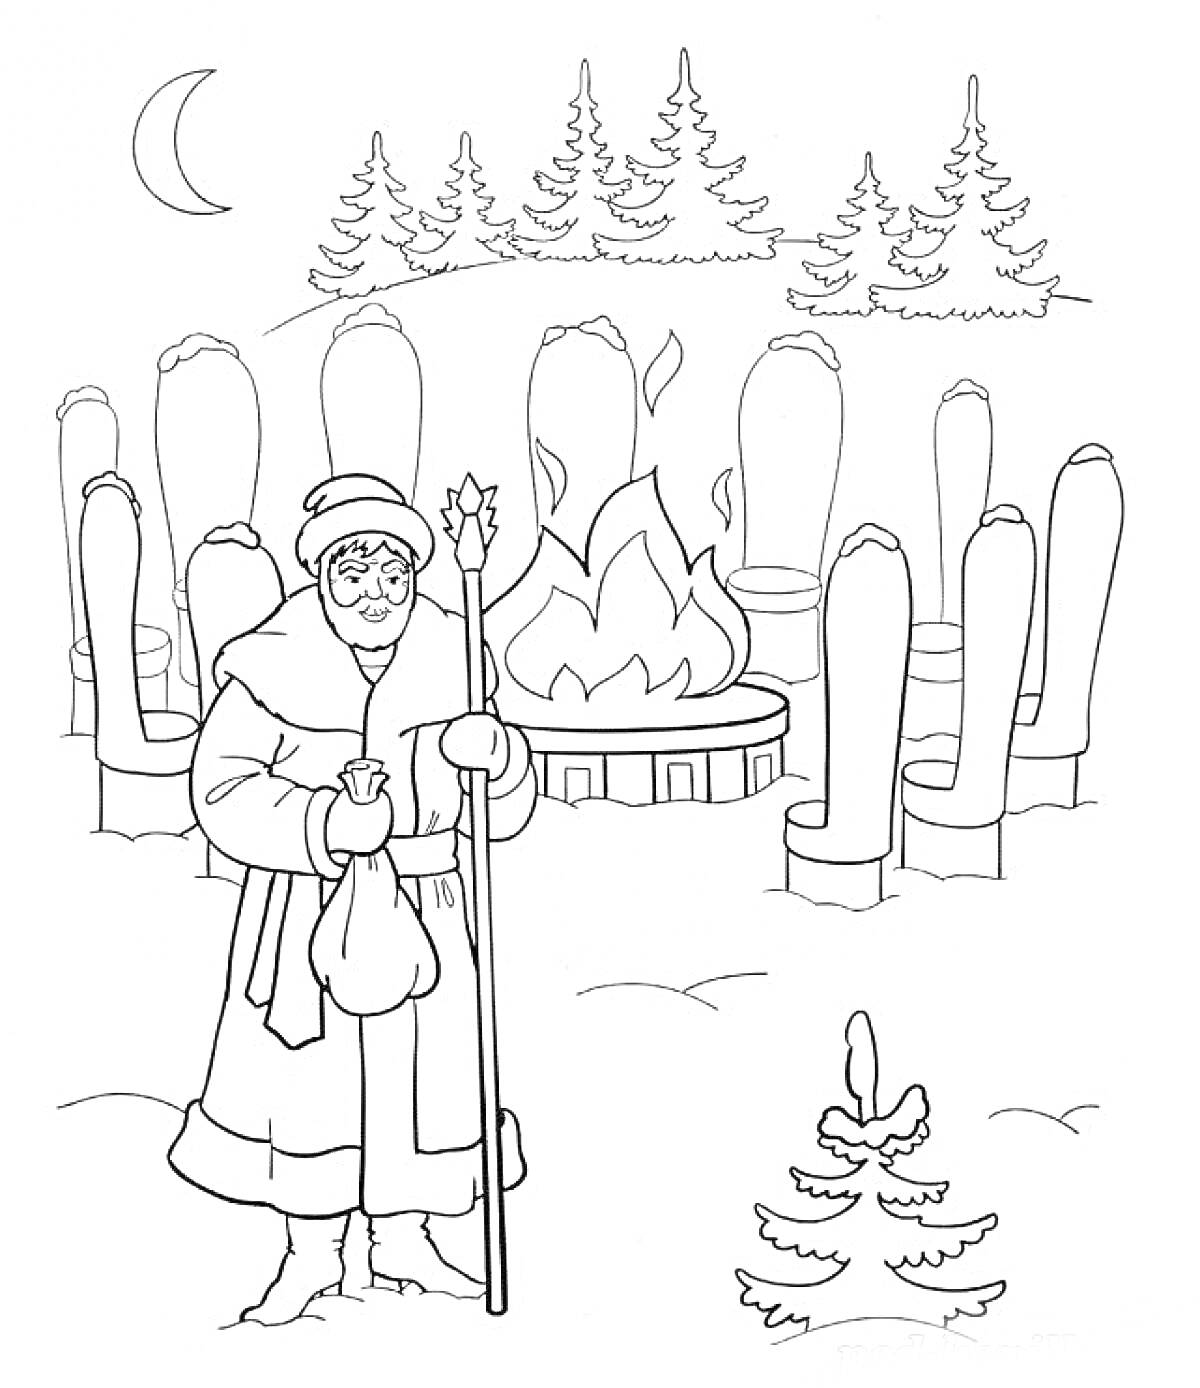 Раскраска Старик с посохом и мешочком перед костром и двенадцатью стульями на том месте, где зима окружена ёлками и лесом.